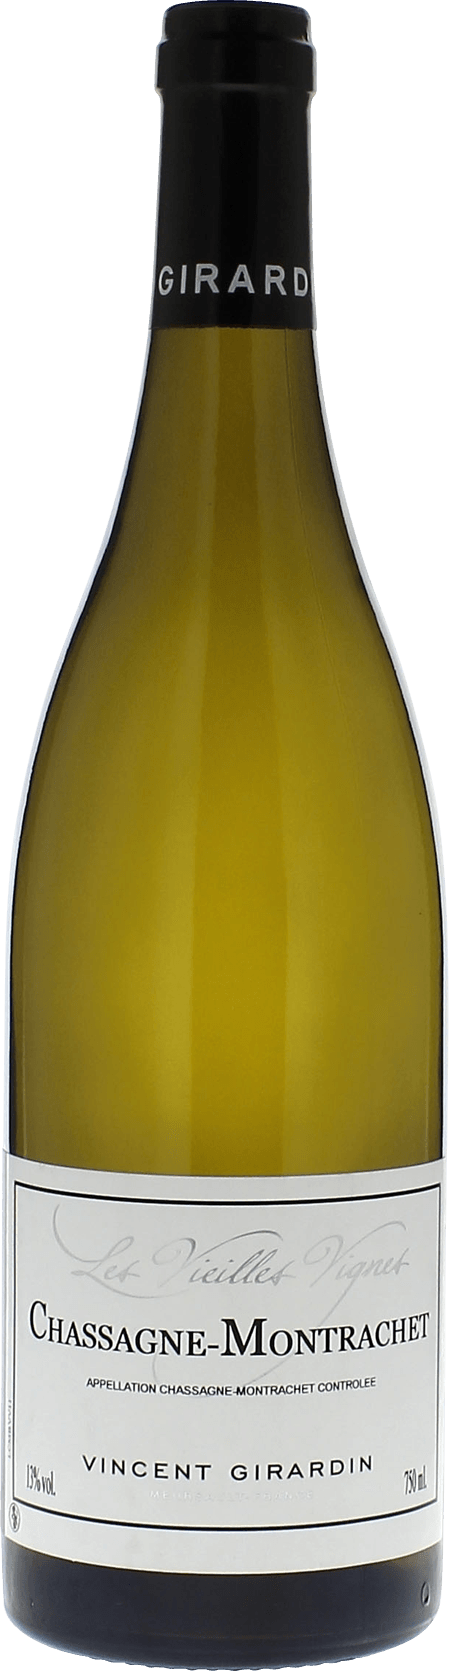 Chassagne montrachet vieilles vignes 2015 Domaine GIRARDIN Vincent, Bourgogne blanc